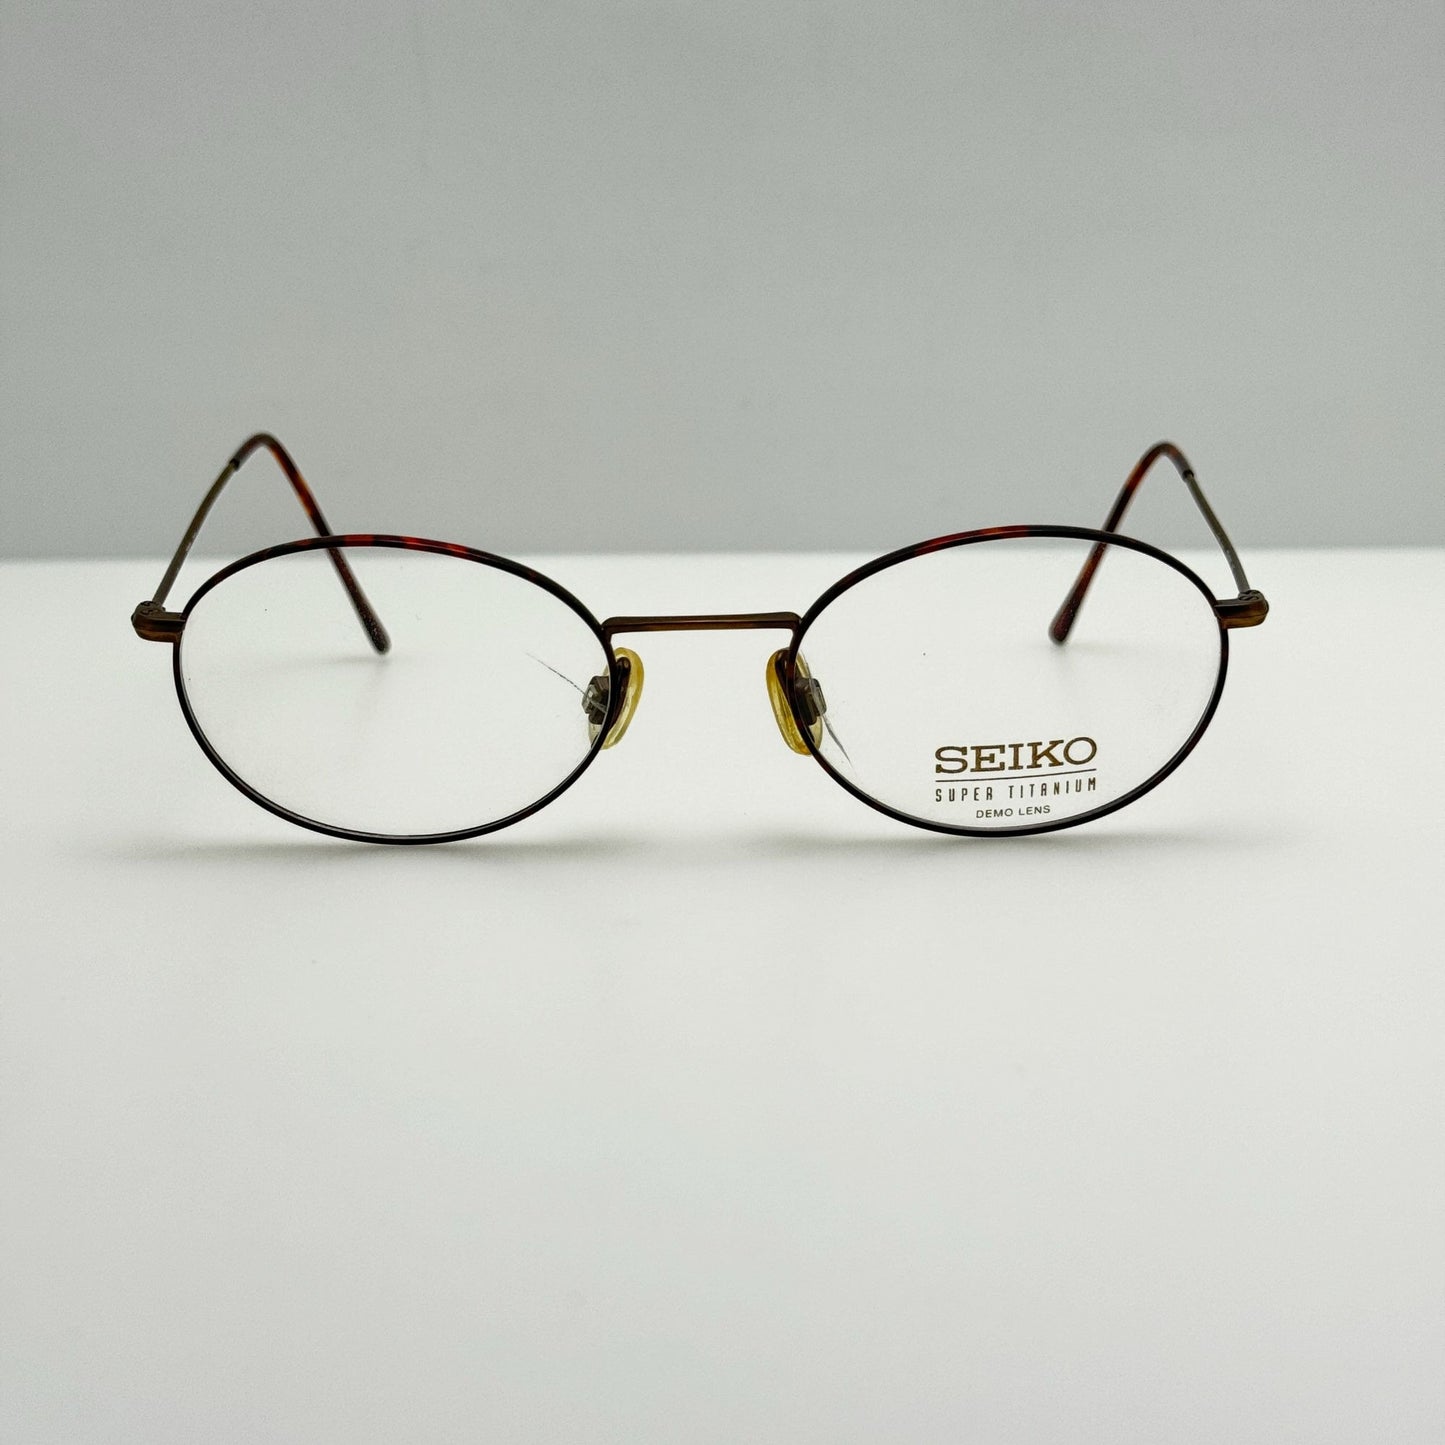 Seiko Eyeglasses Eye Glasses Frames T324 320 49-19-145 Japan